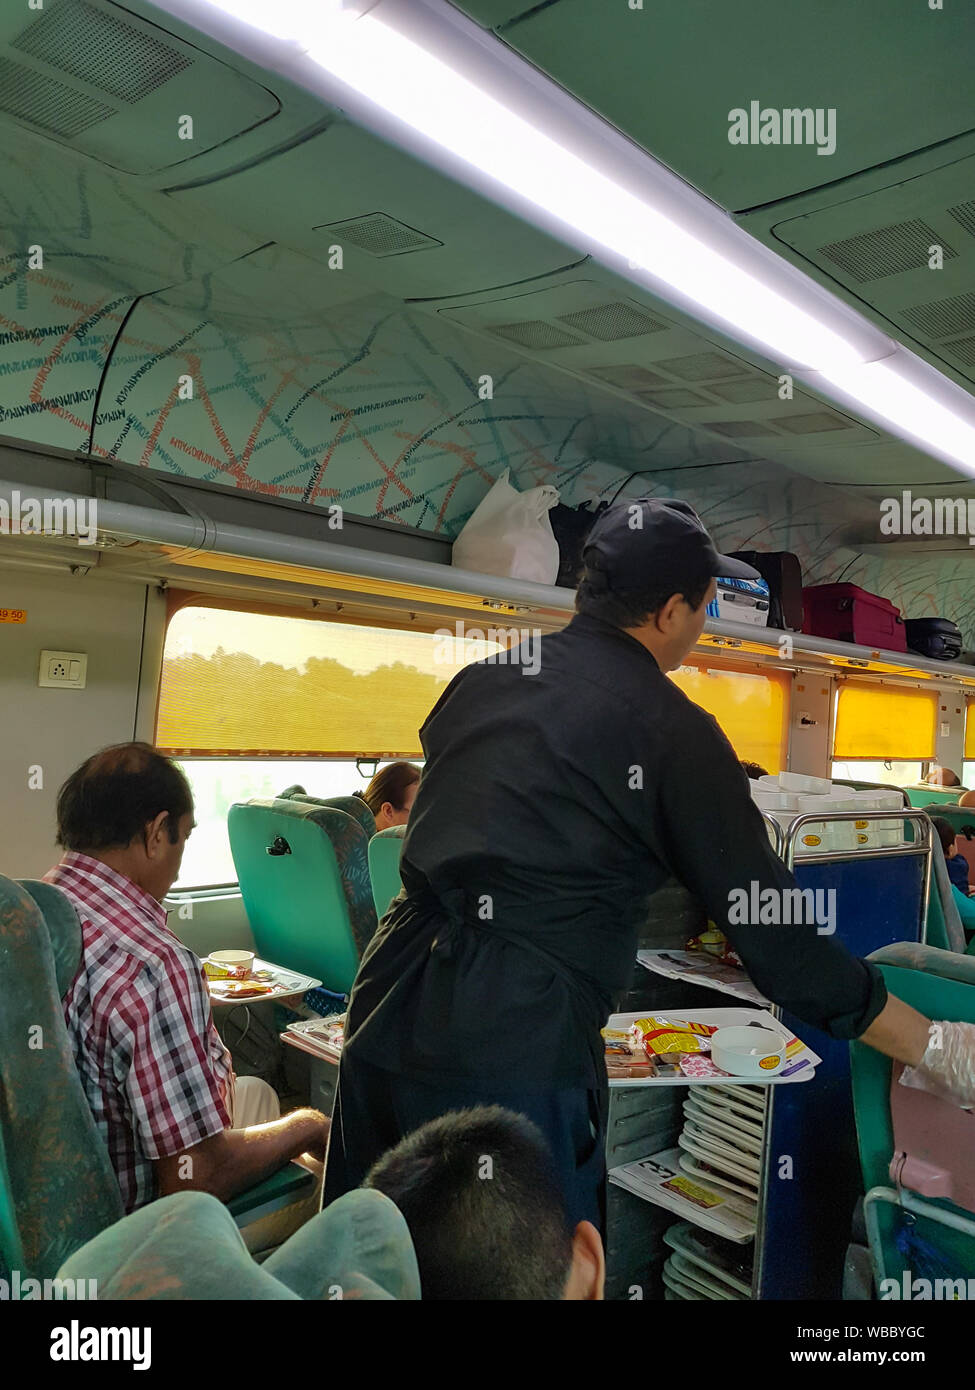 Agra, Indien - 13. August 2019: Food Service von Indian Railways auf Shatabdi Express Zug Stockfoto